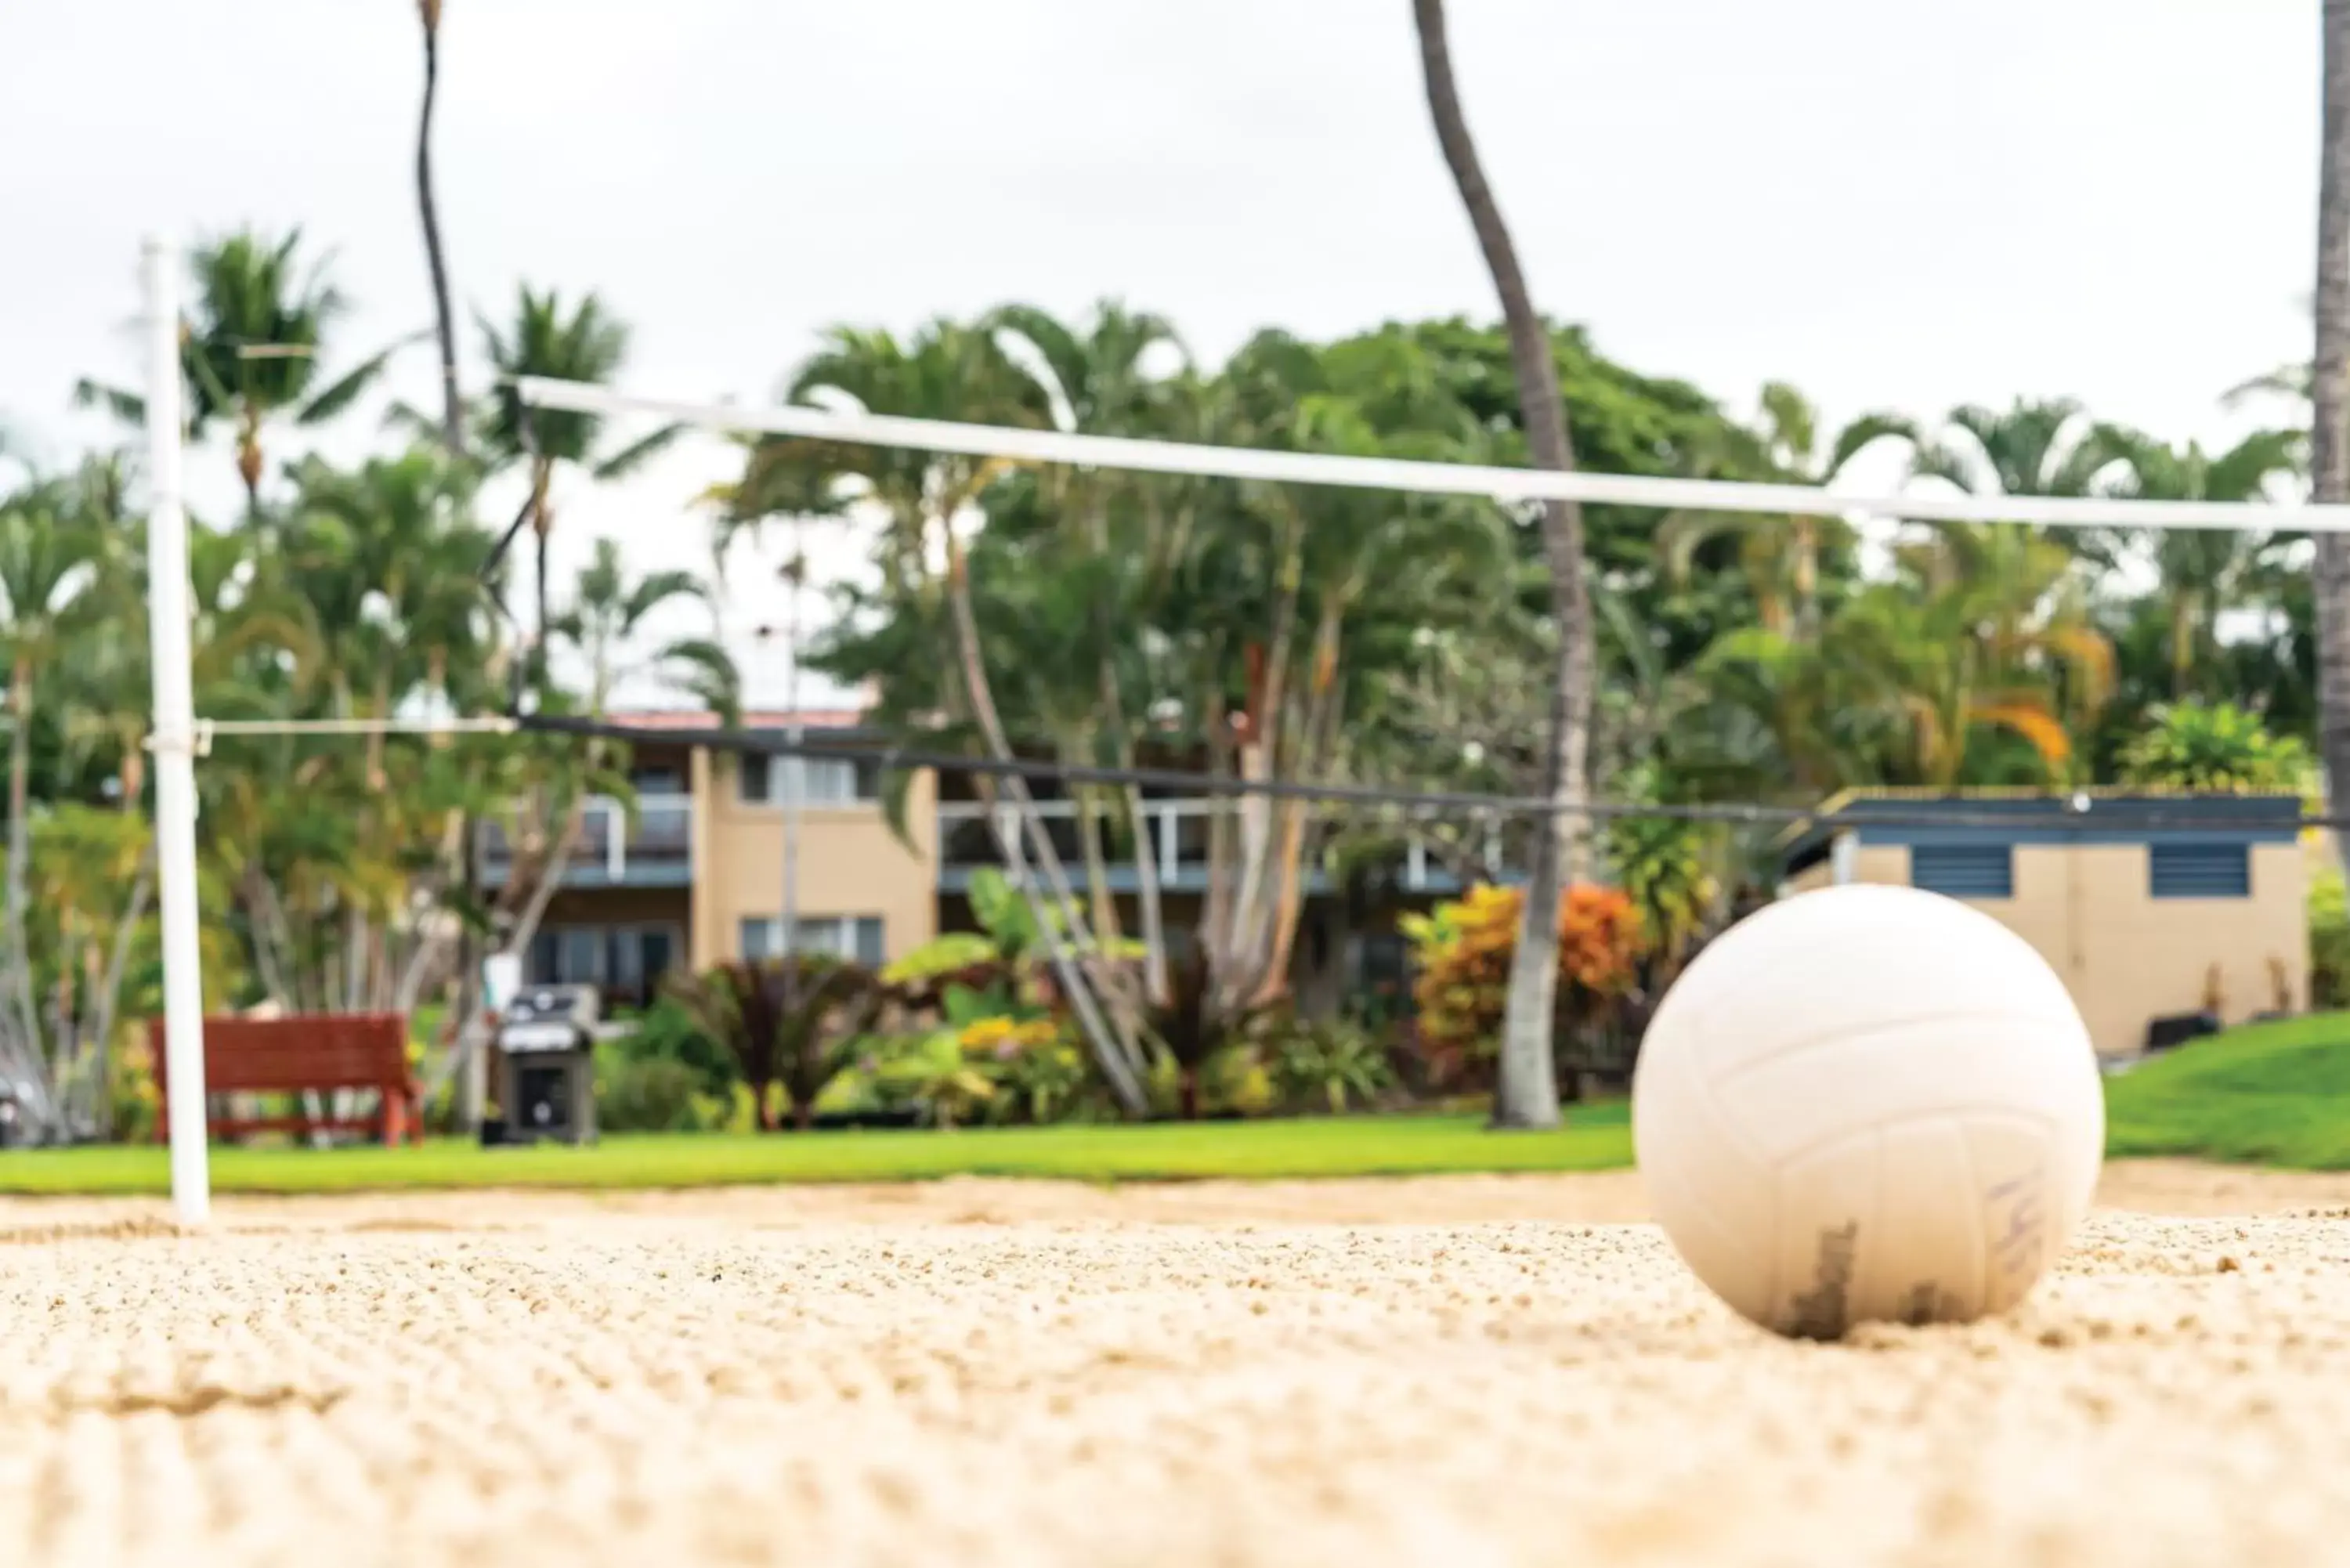 Sports, Other Activities in Kona Coast Resort